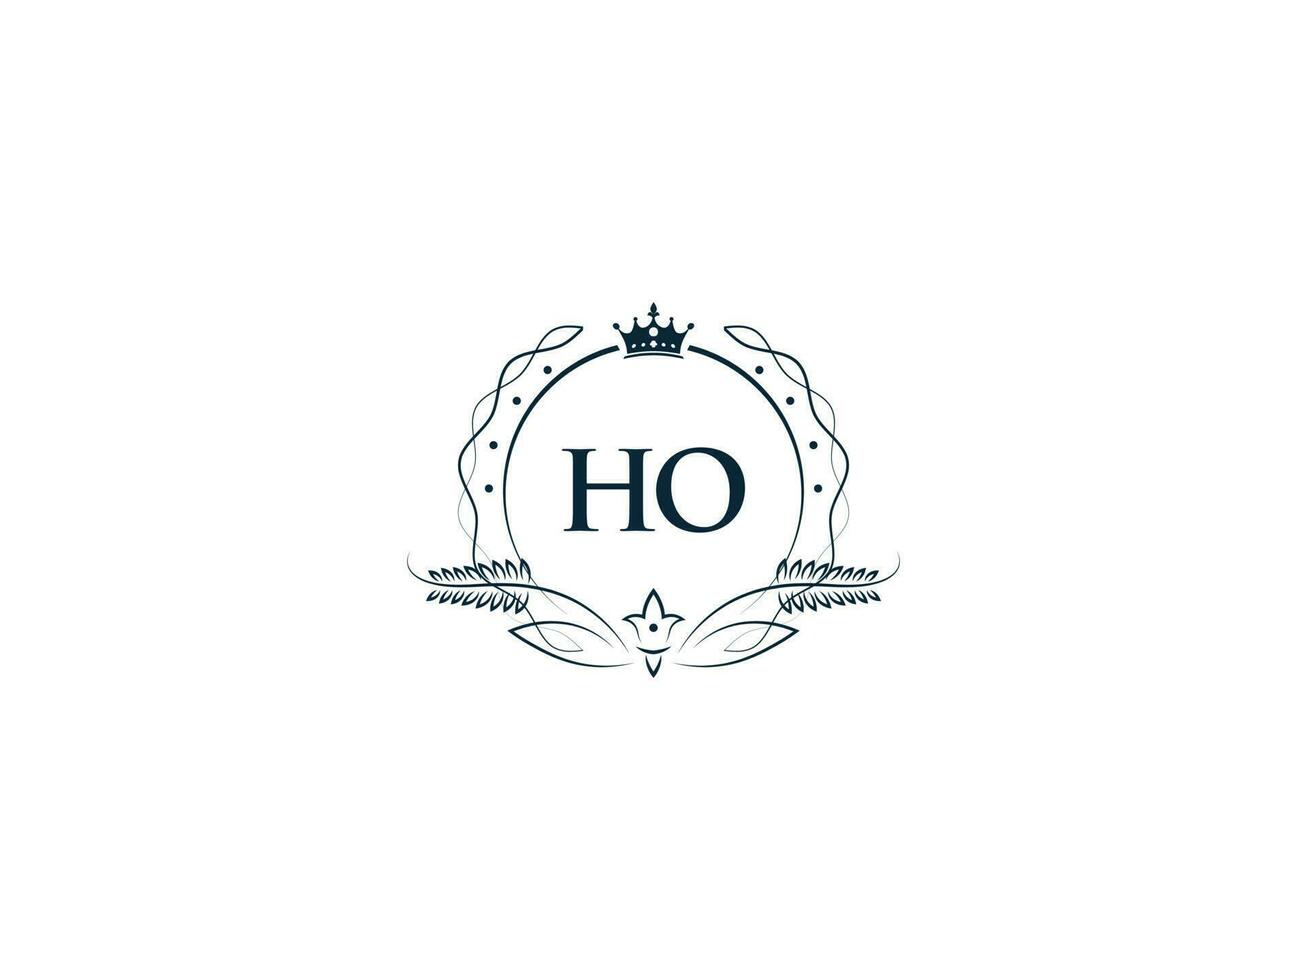 féminin couronne ho Roi logo, initiale ho Oh logo lettre vecteur art